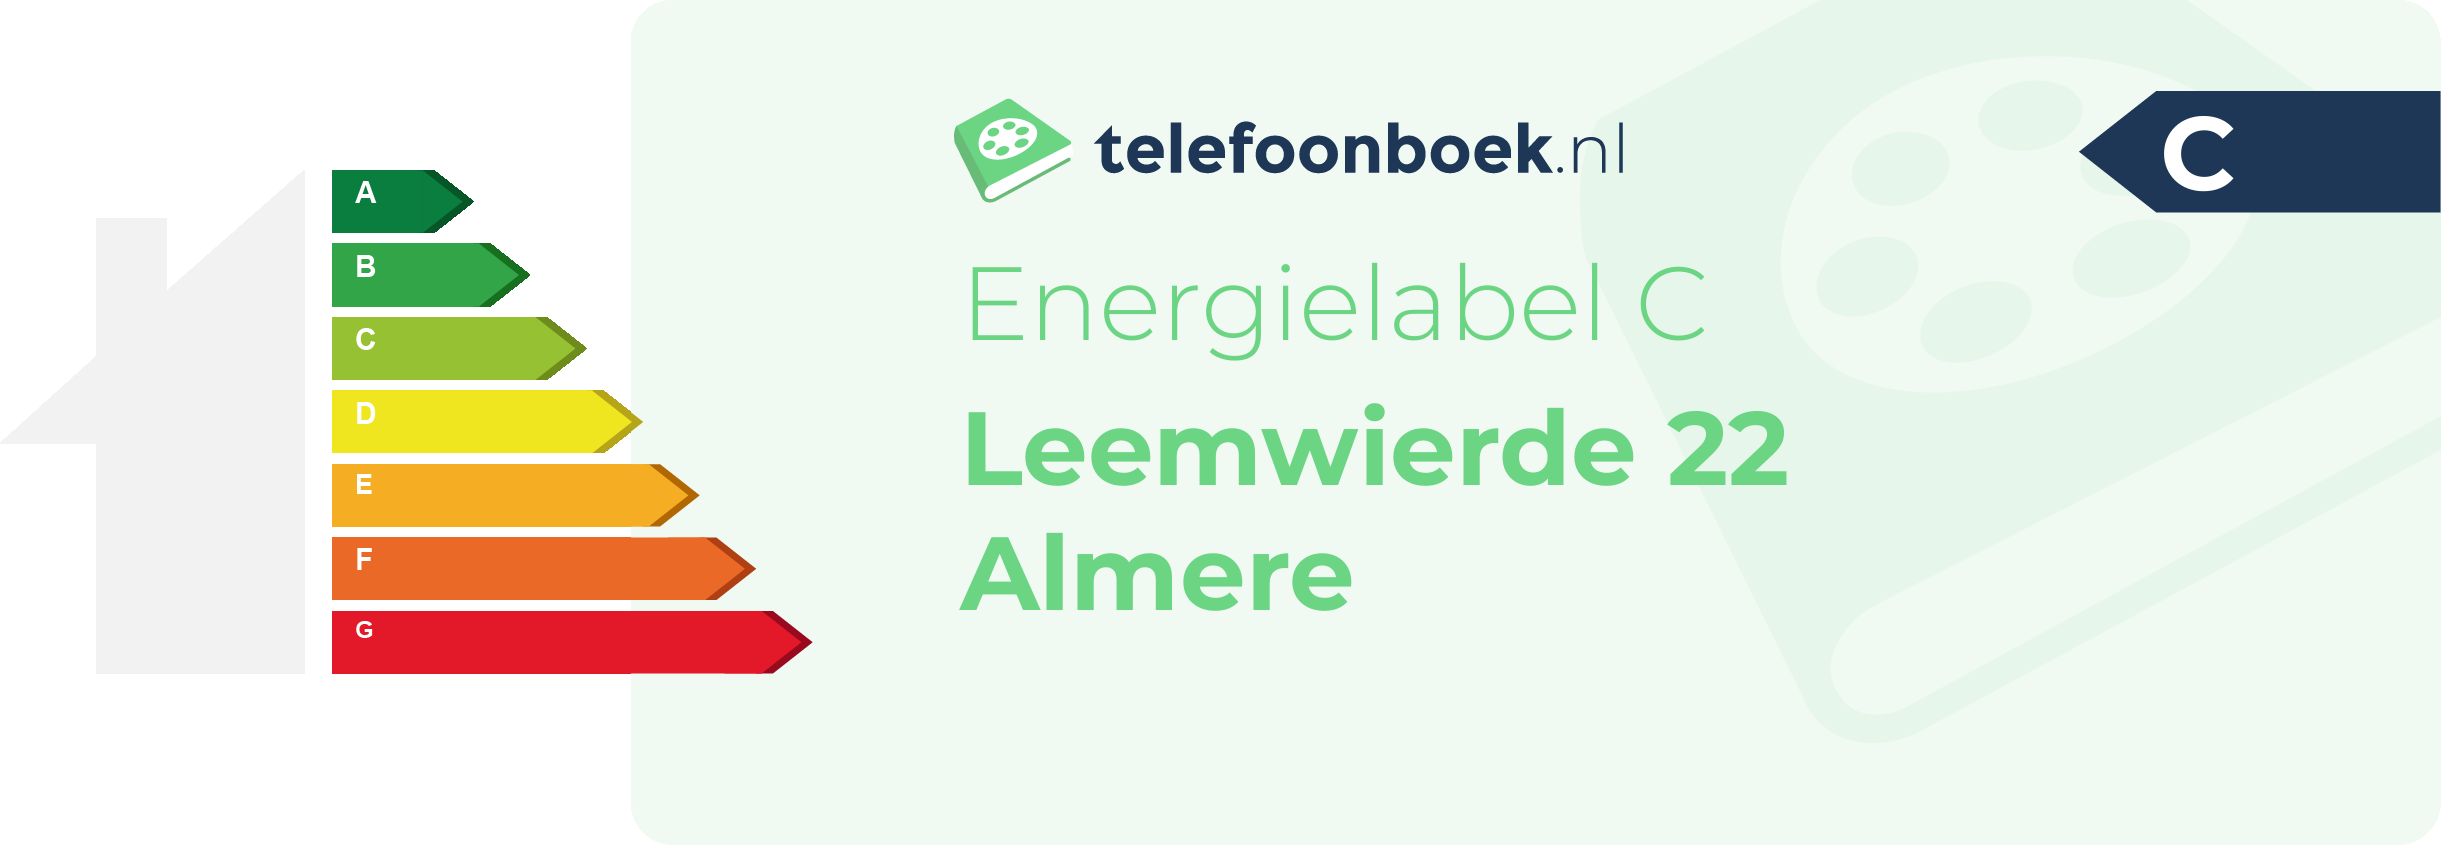 Energielabel Leemwierde 22 Almere